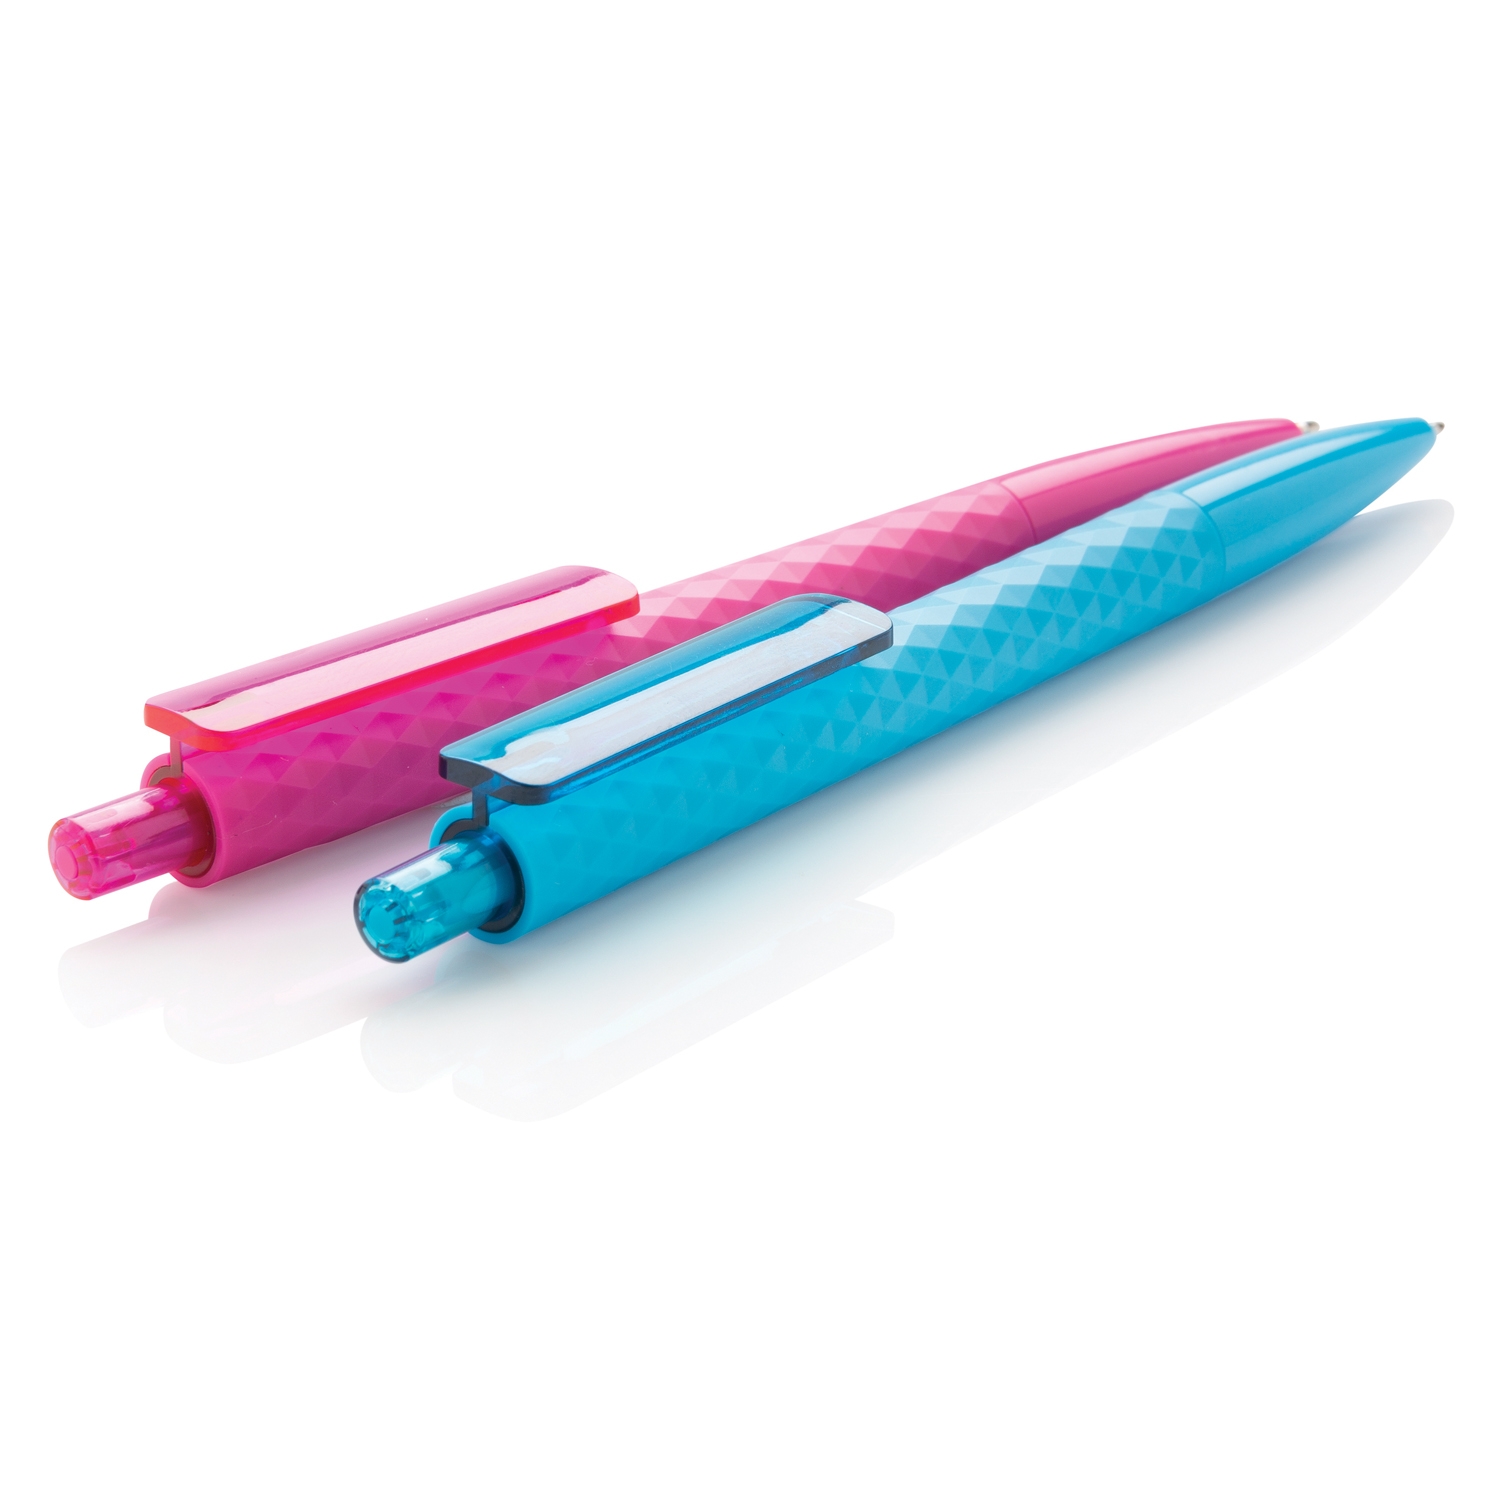 Ручка X3, розовый, abs; pc